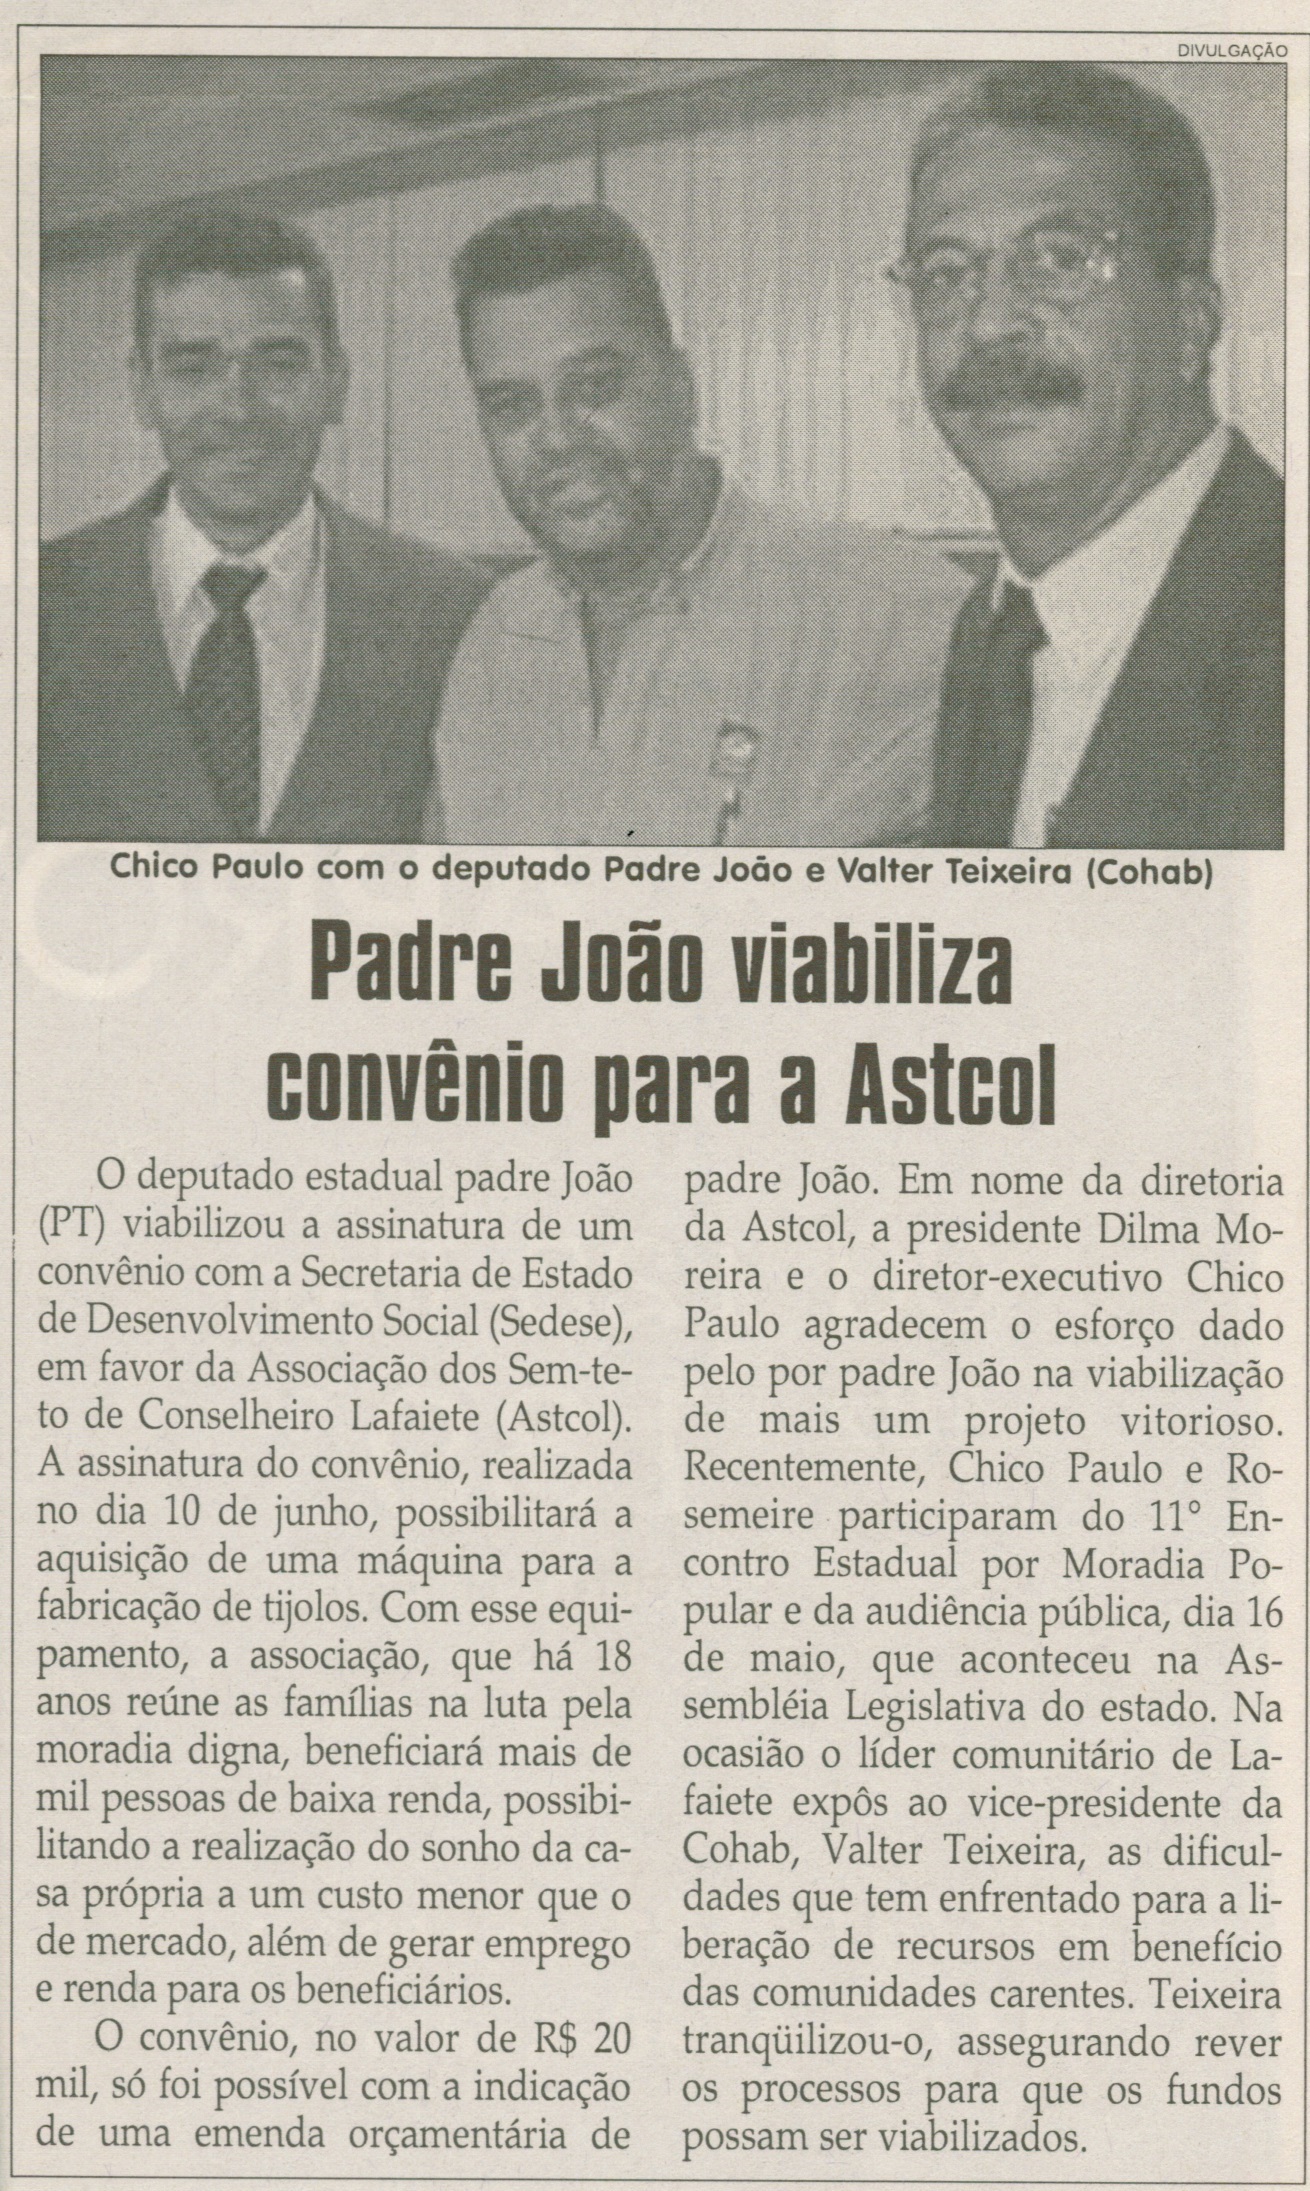 Padre João viabiliza convênio para a Astcol. Jornal Correio da Cidade, Conselheiro Lafaiete, 21 jun. 2008, p. 4.